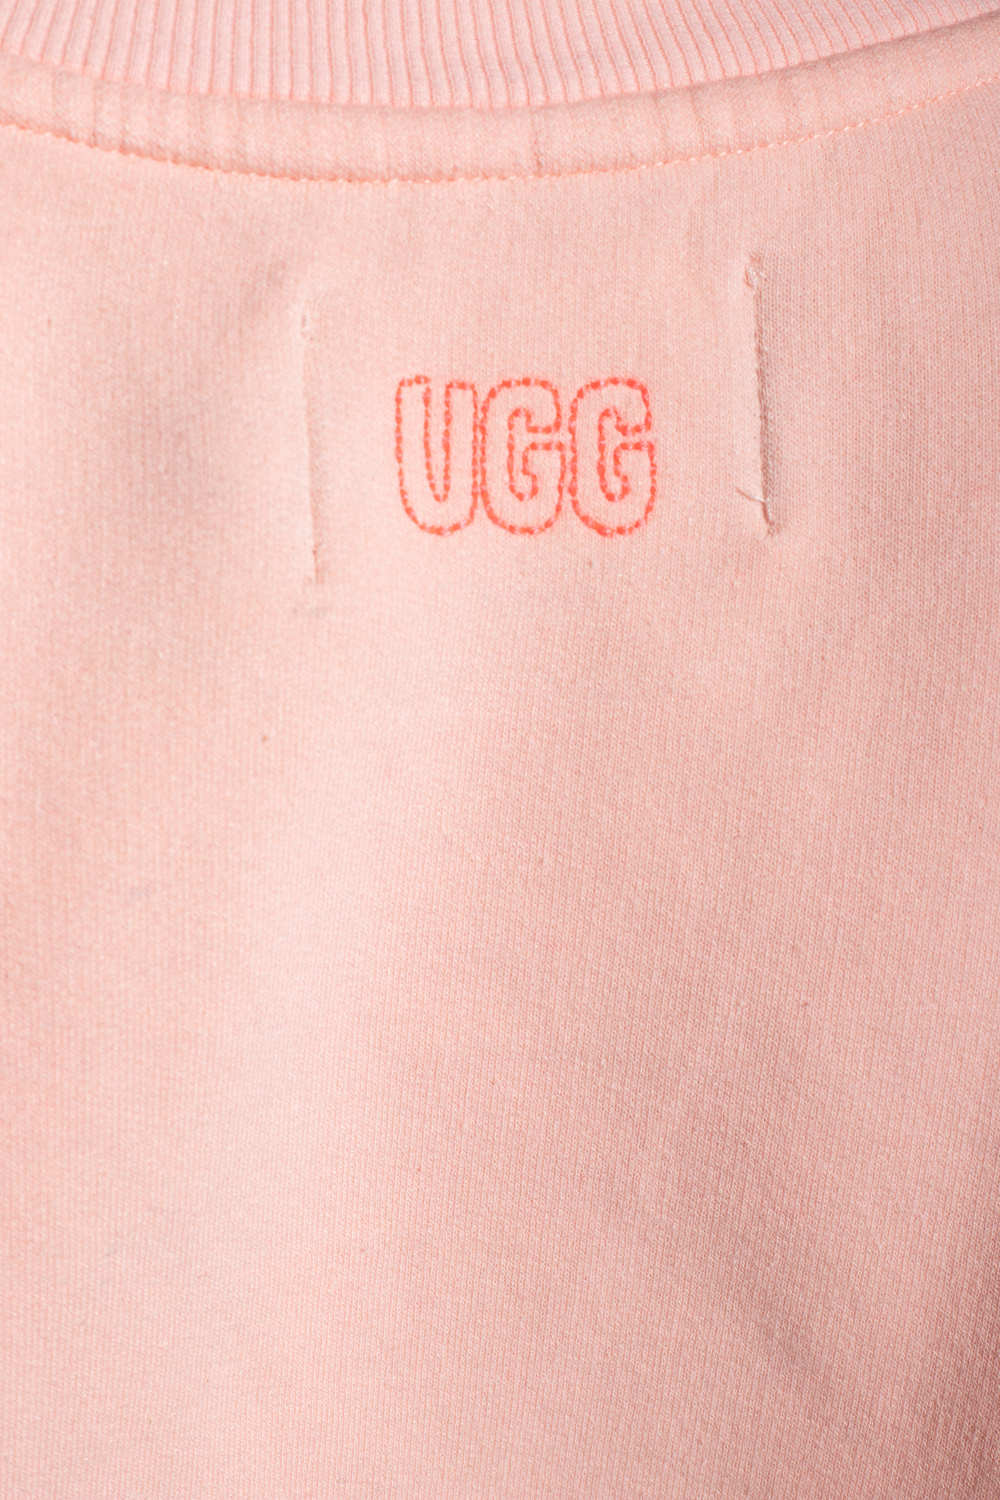 UGG ‘Brook Balloon’ sweatshirt